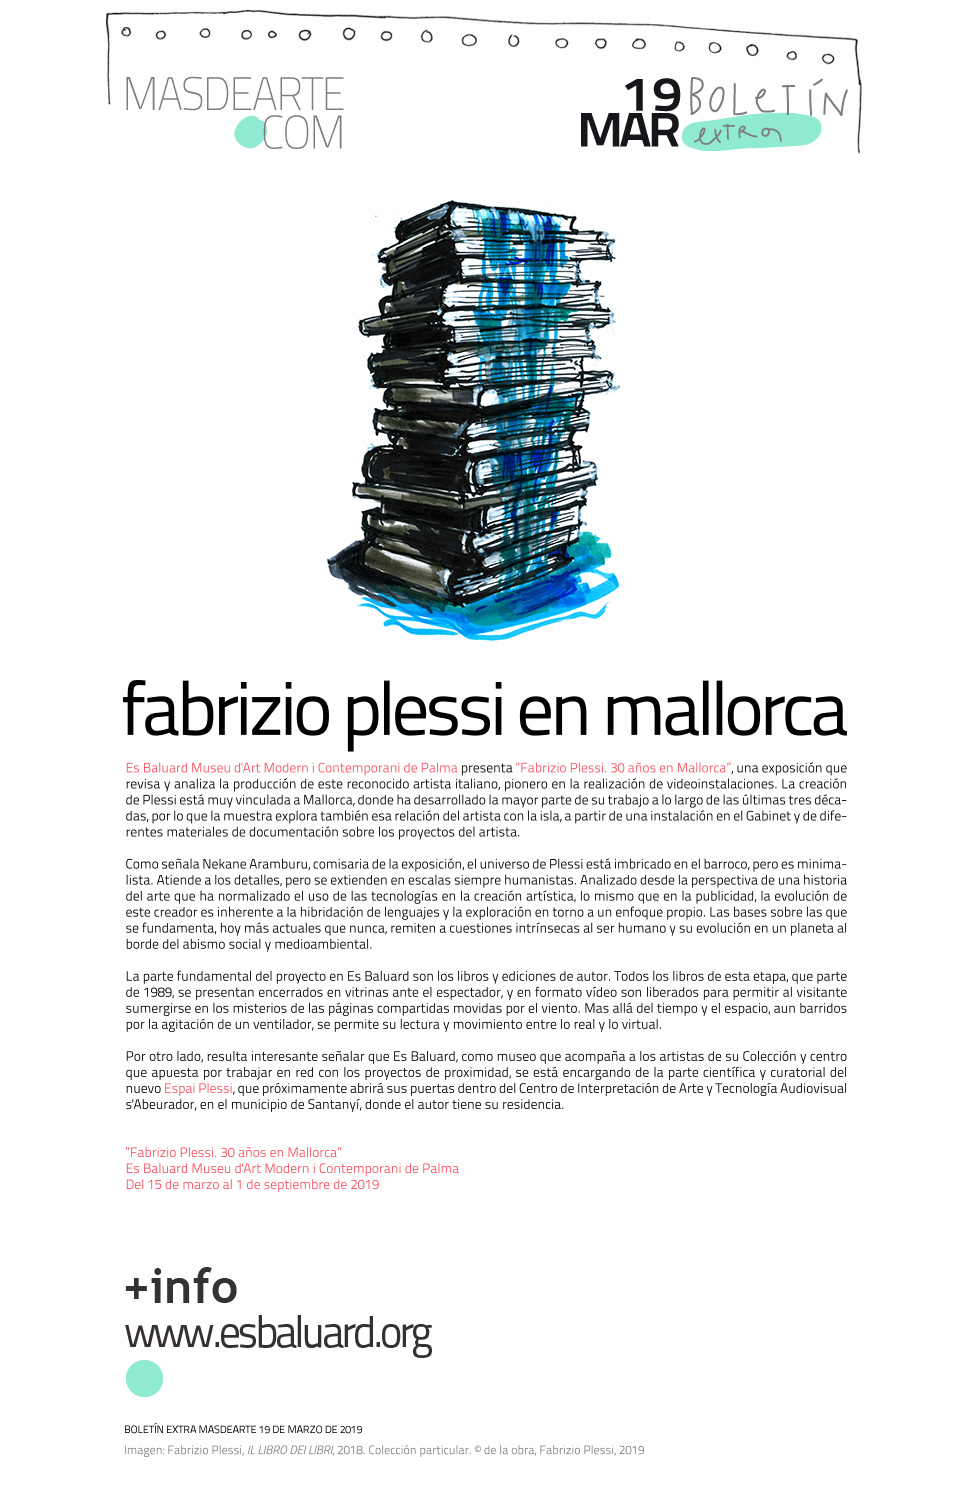 Extra masdearte: Fabrizio Plessi. 30 años en Mallorca. Nueva exposición
 en Es Baluard